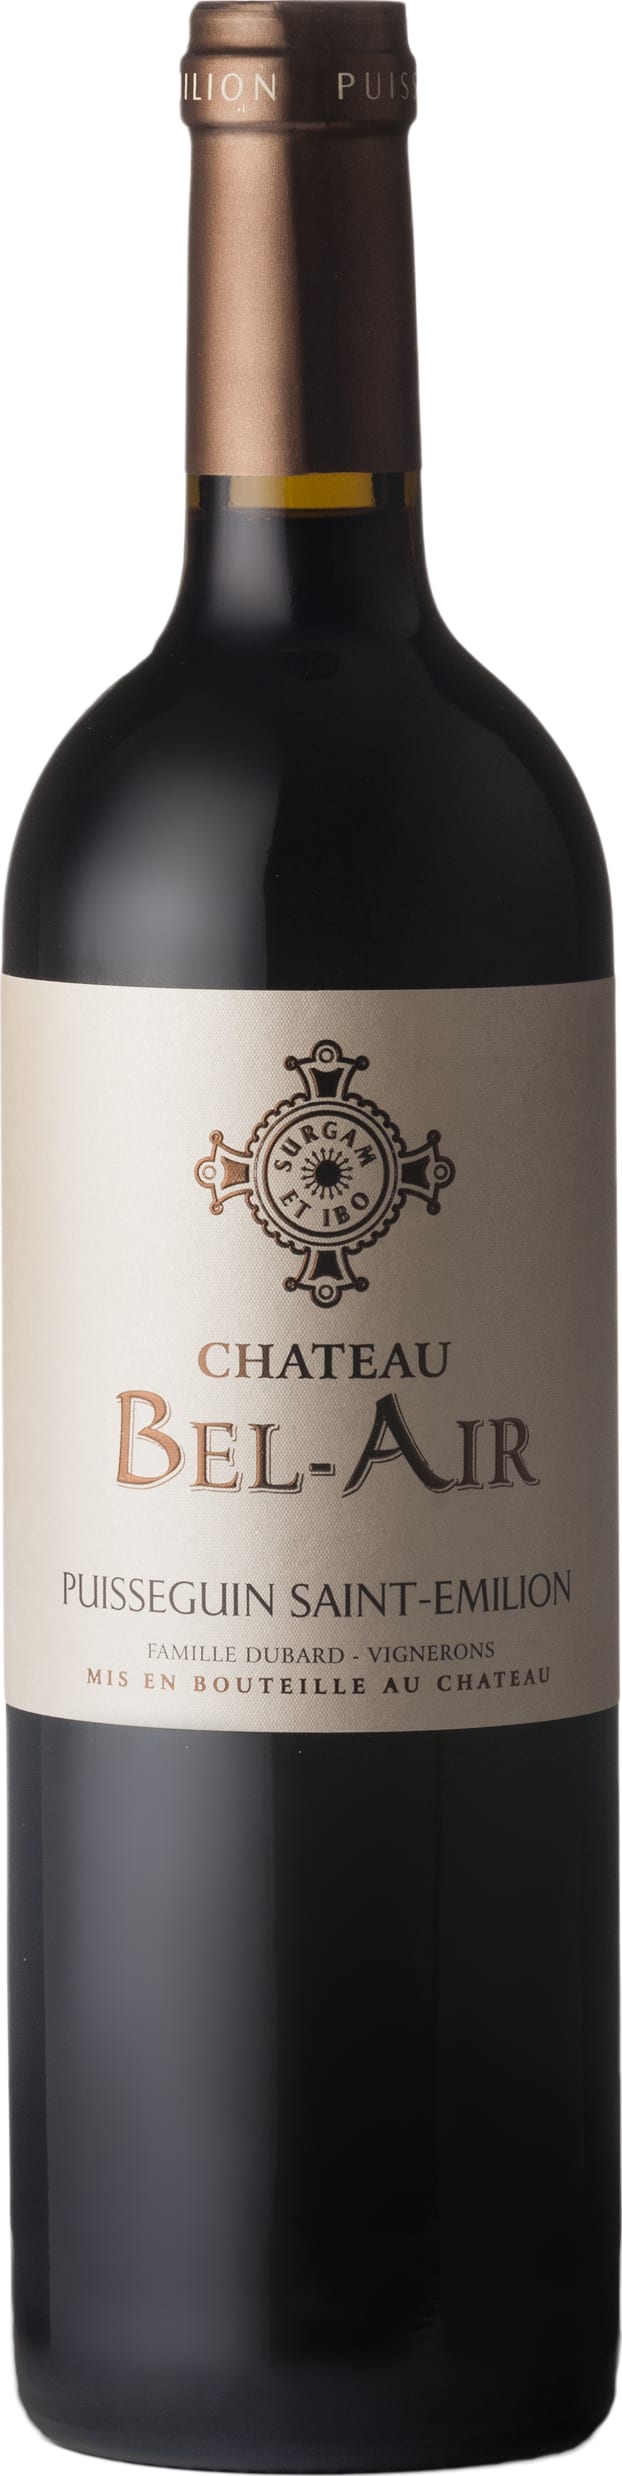 Chateau Dubard Bel-Air Puisseguin Saint-Emilion 2020 75cl - Buy Chateau Dubard Bel-Air Wines from GREAT WINES DIRECT wine shop